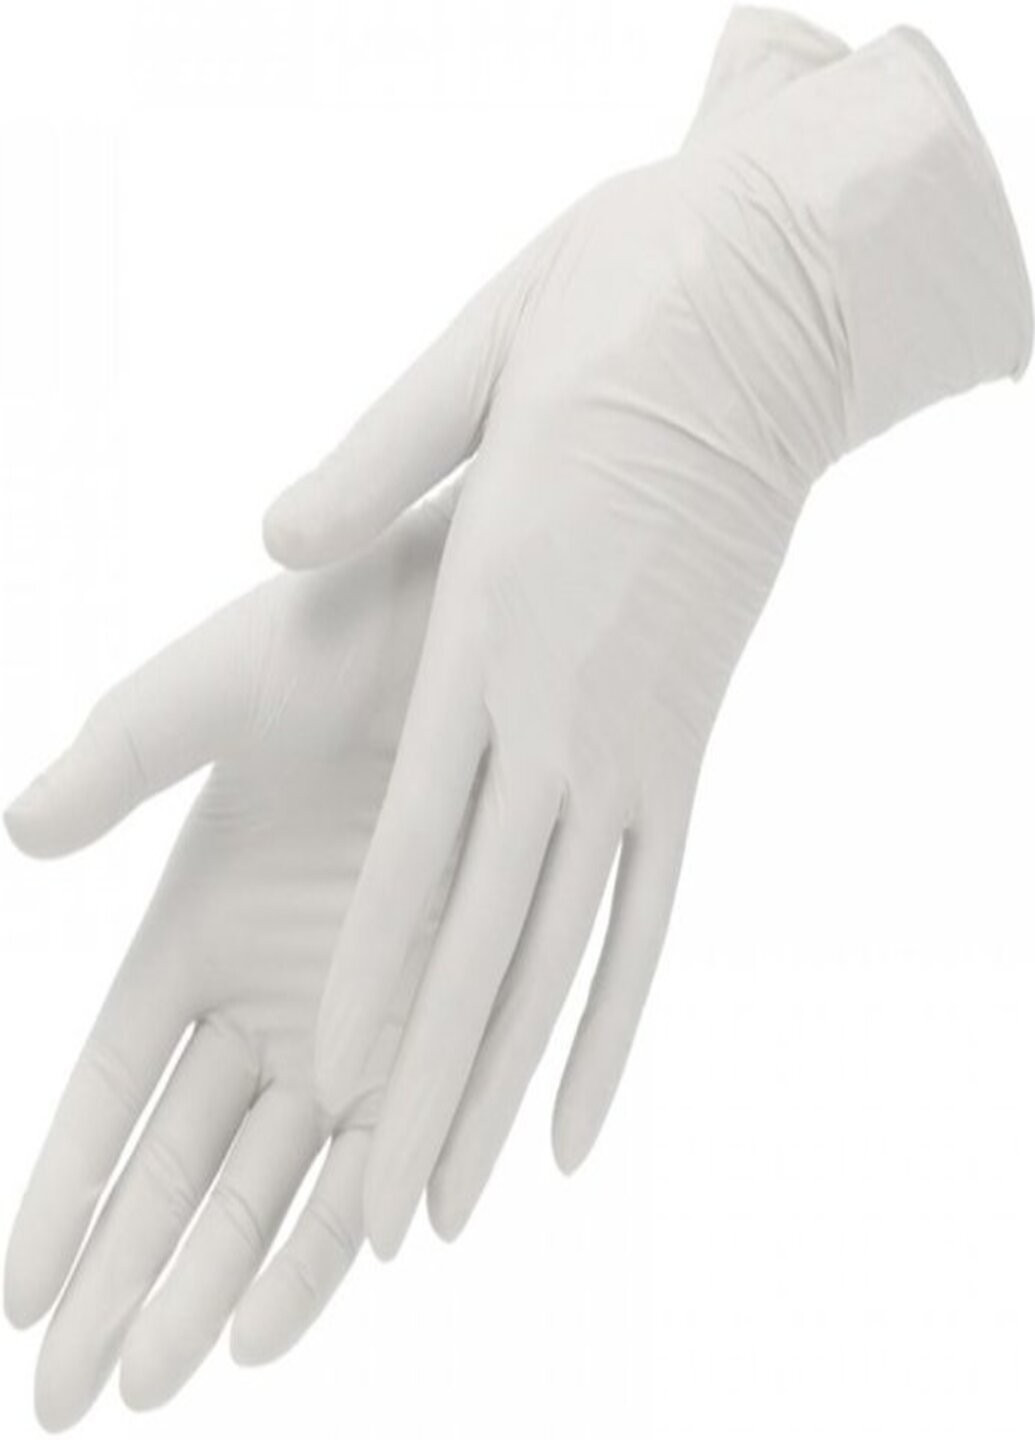 Латексні рукавички SafeTouch® опудрені текстуровані розмір XS 100 шт. Білі Medicom білі